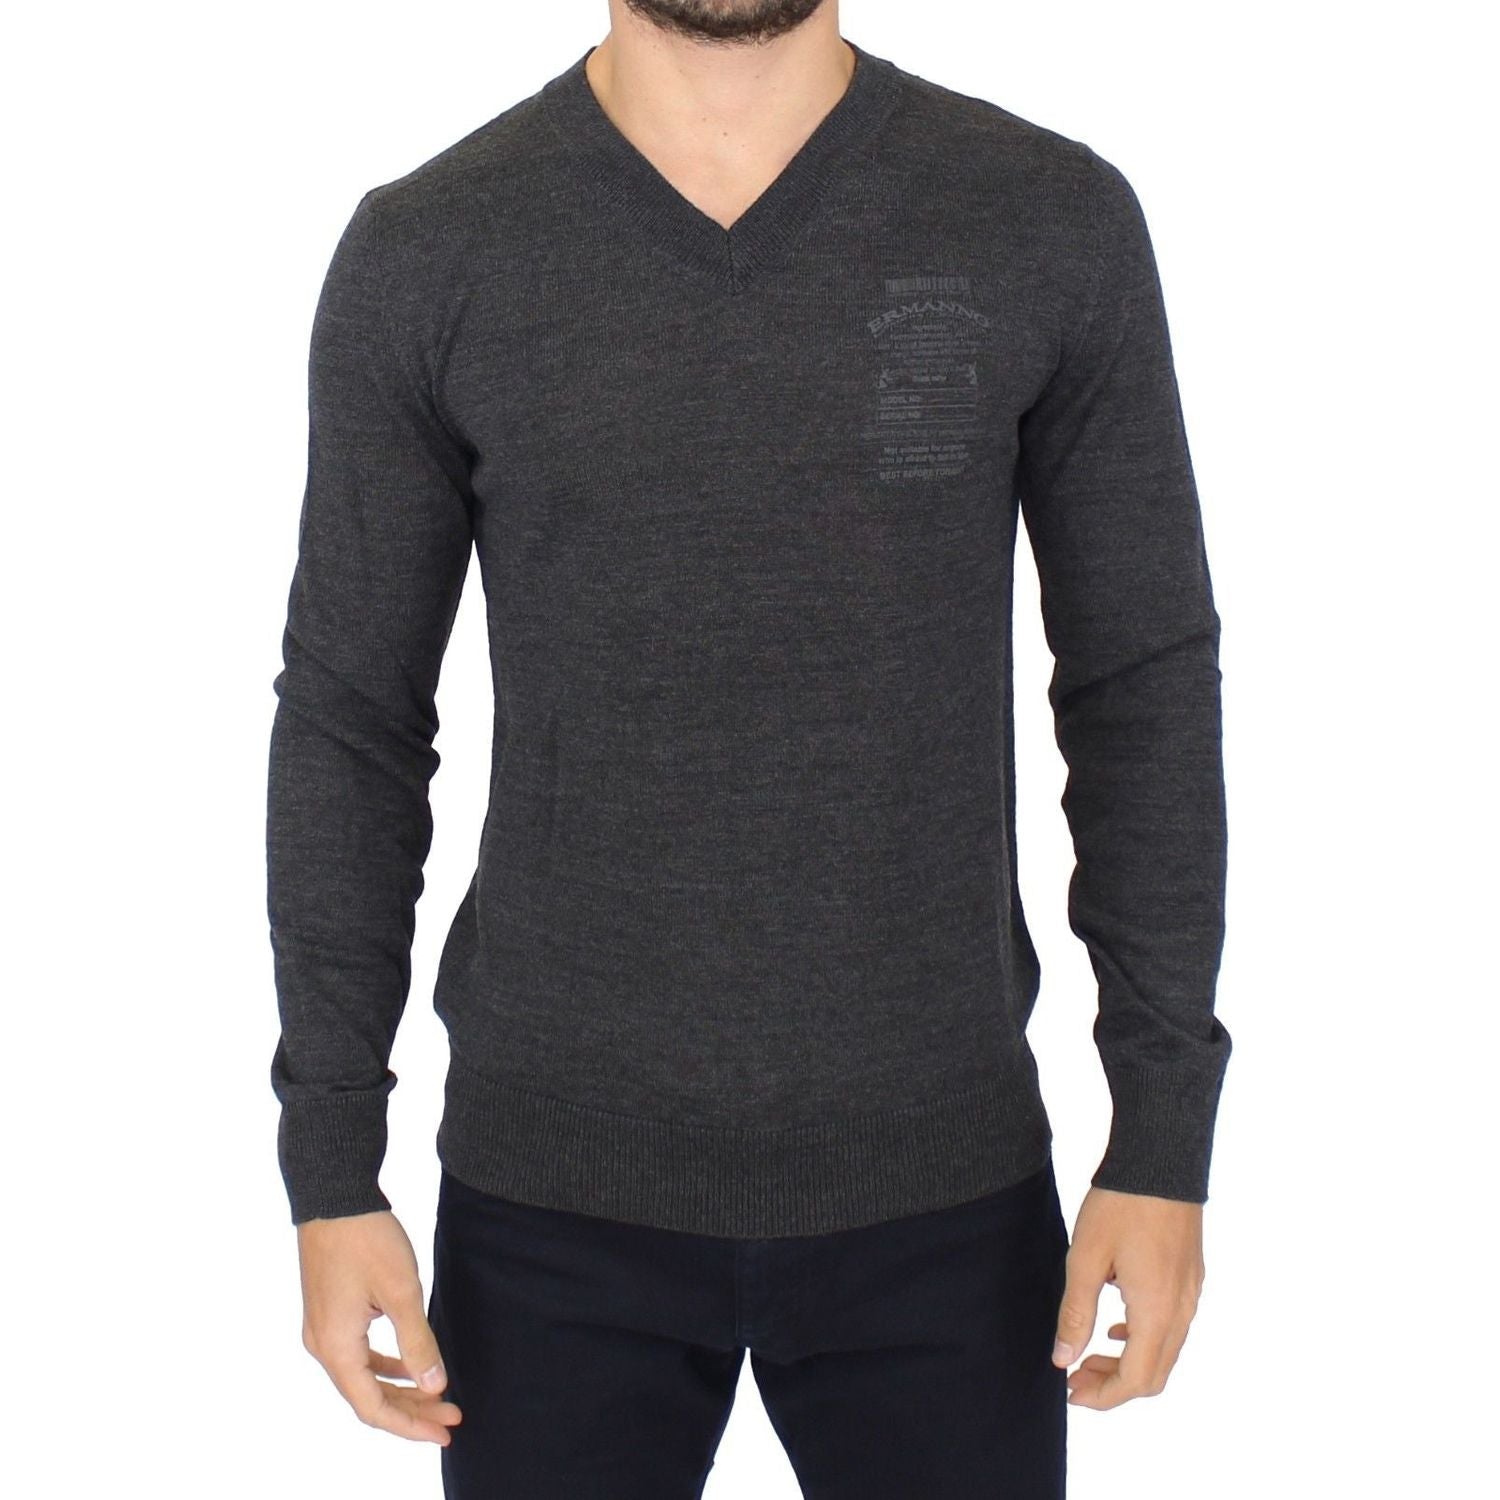 Ermanno Scervino | Gray Wool Blend V-neck Pullover Sweater | McRichard Designer Brands